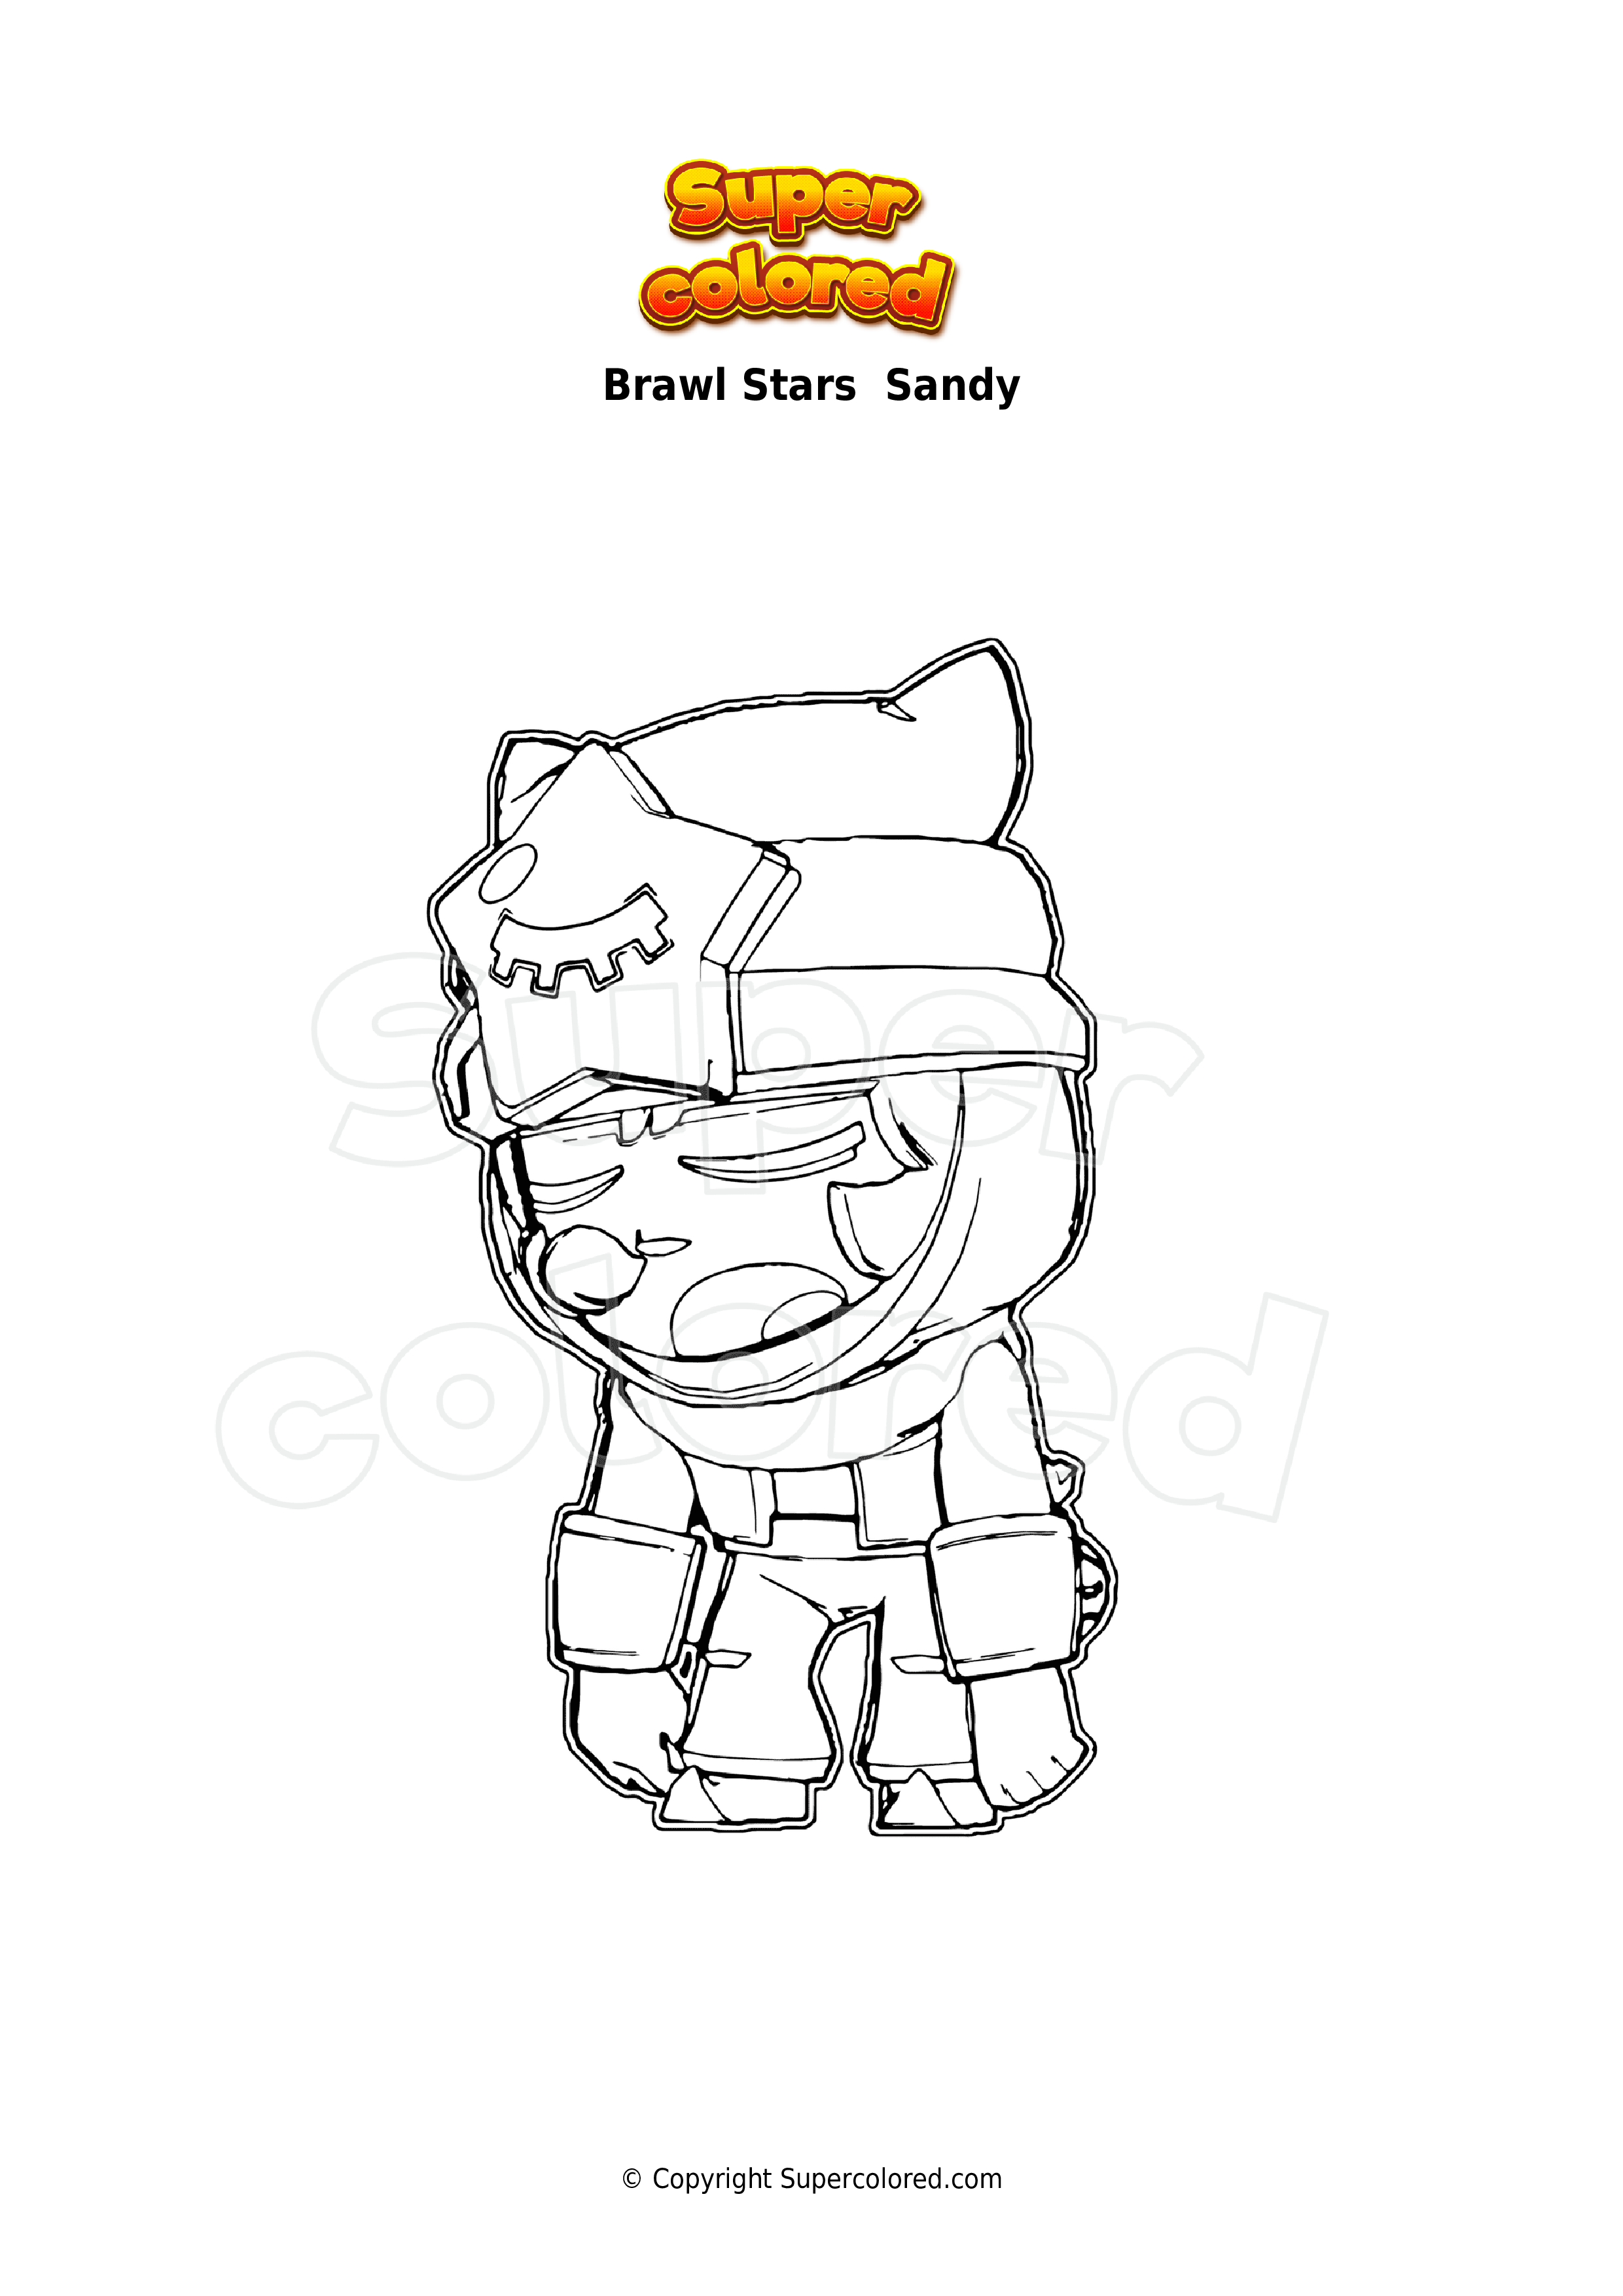 Disegno Da Colorare Brawl Stars Sandy Supercolored Com - sandy brawl stars disegno colorato